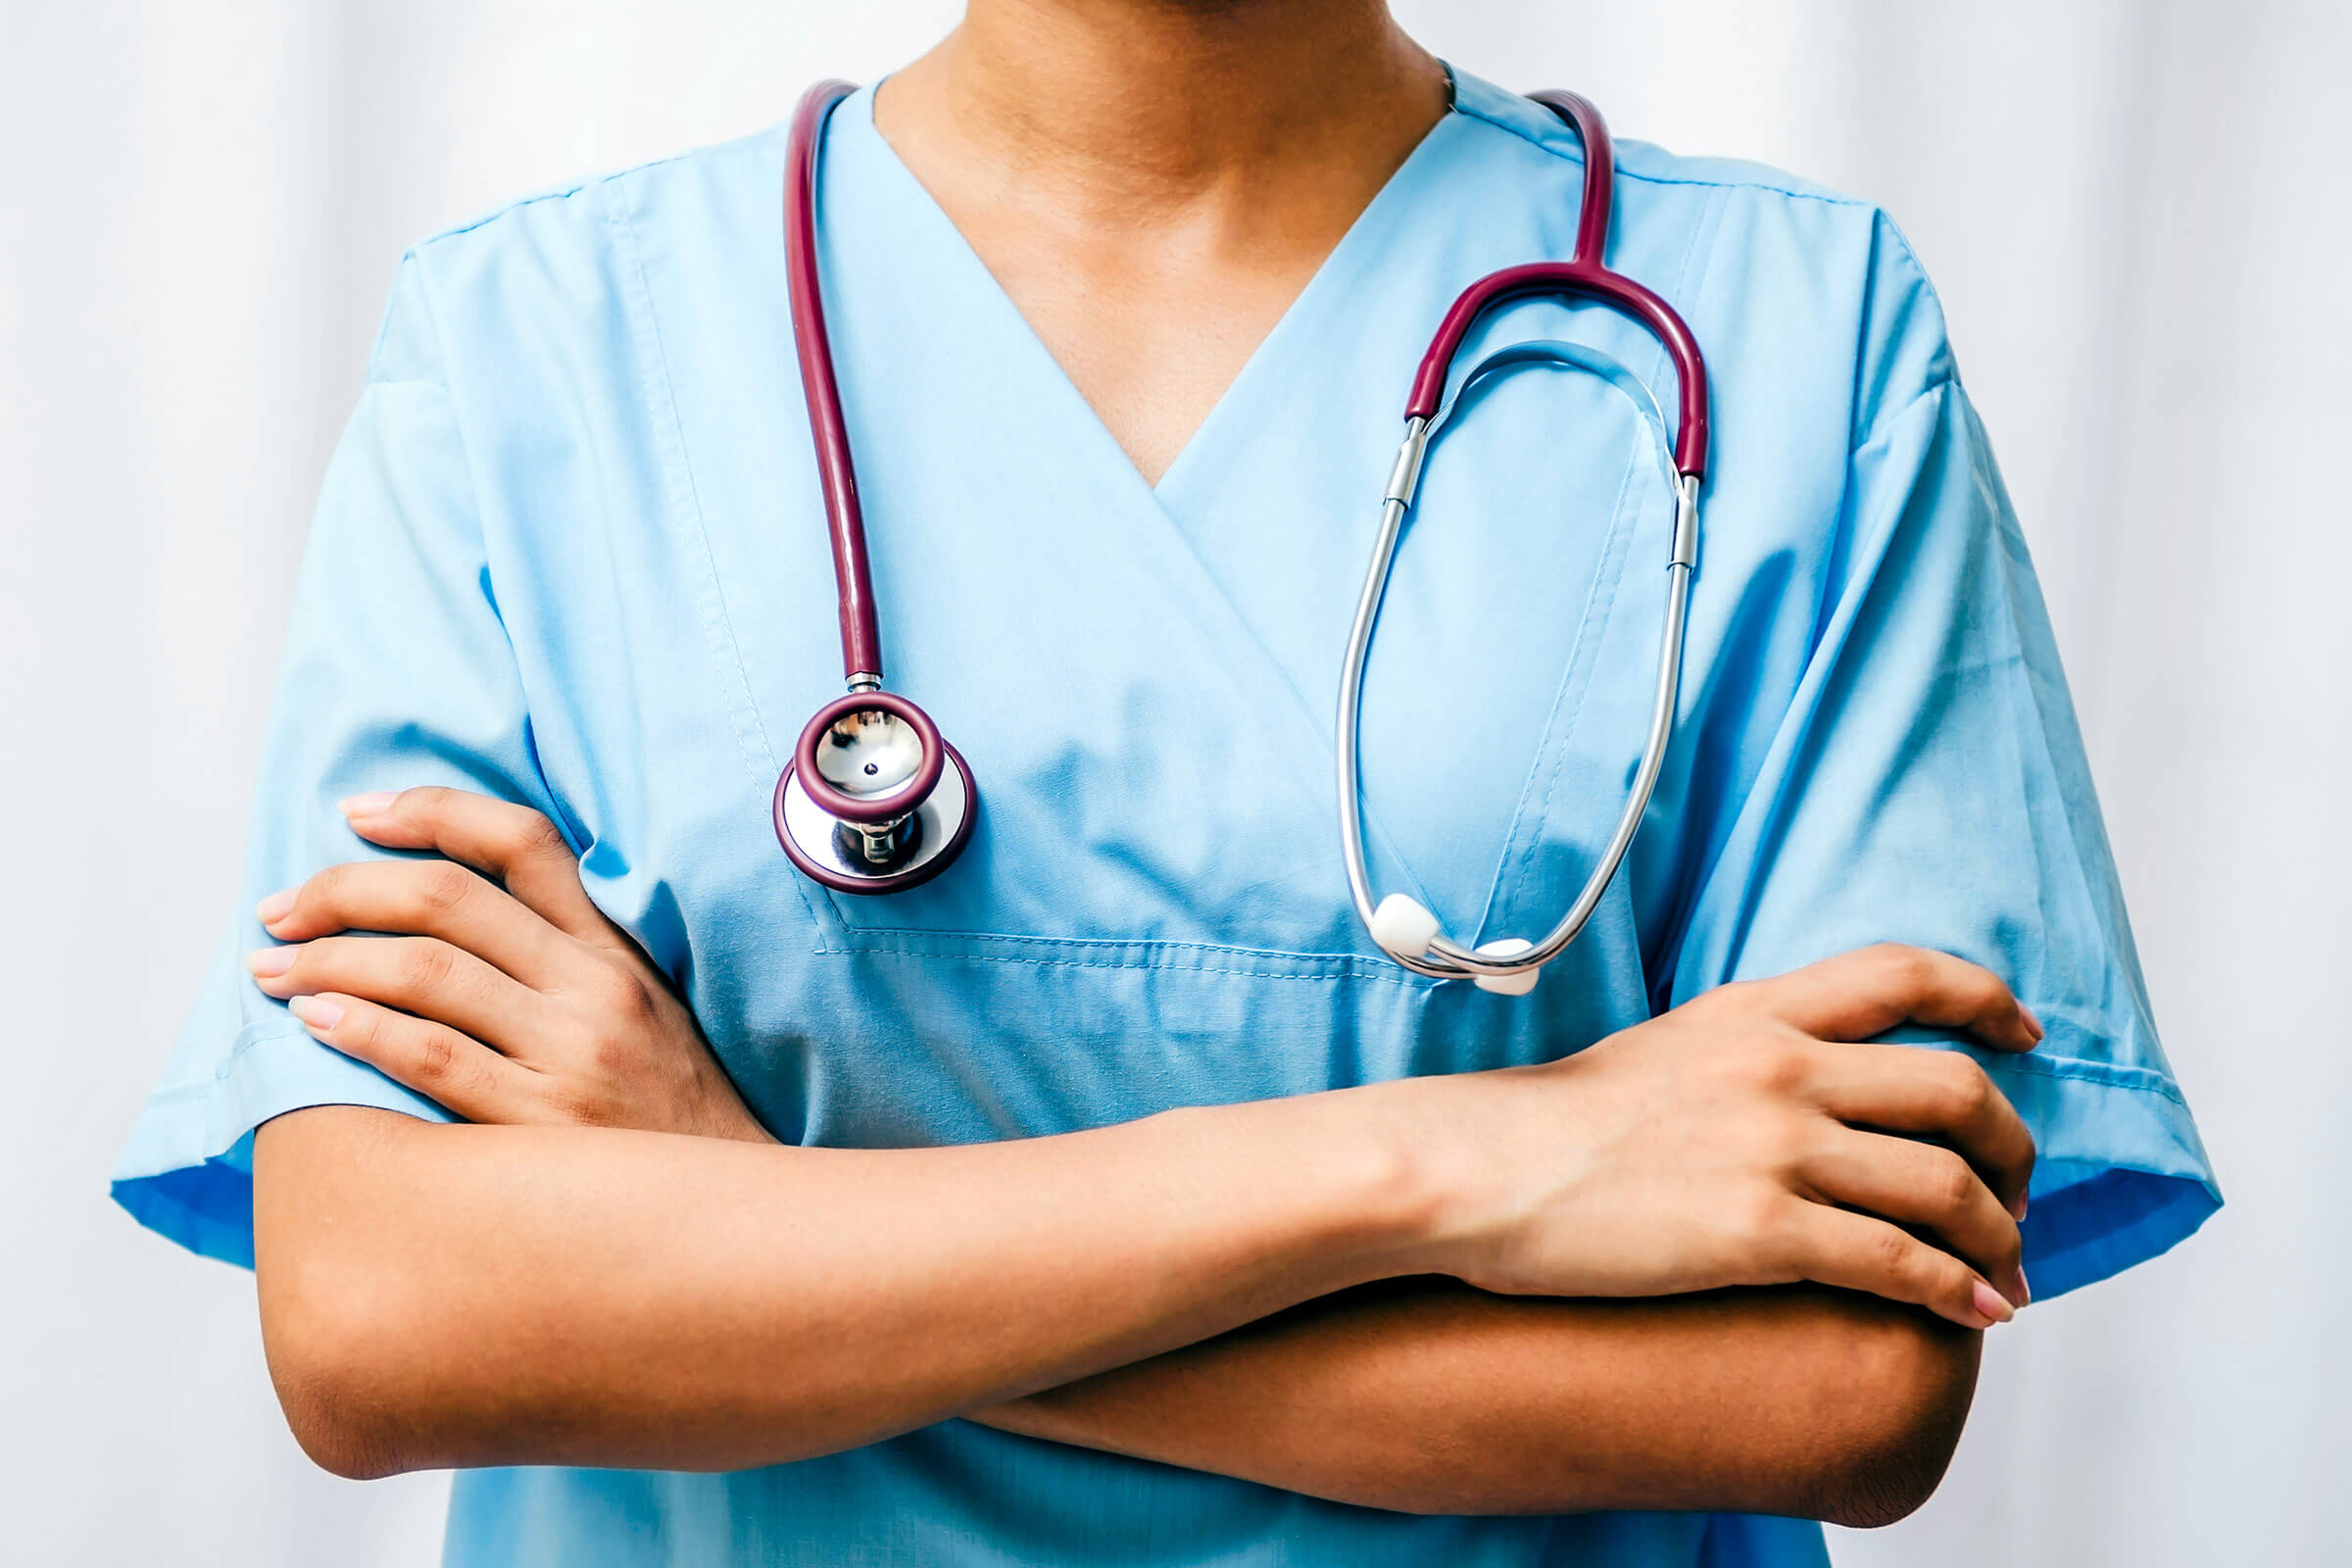 Obstetras-ginecólogos: el camino hacia la profesión